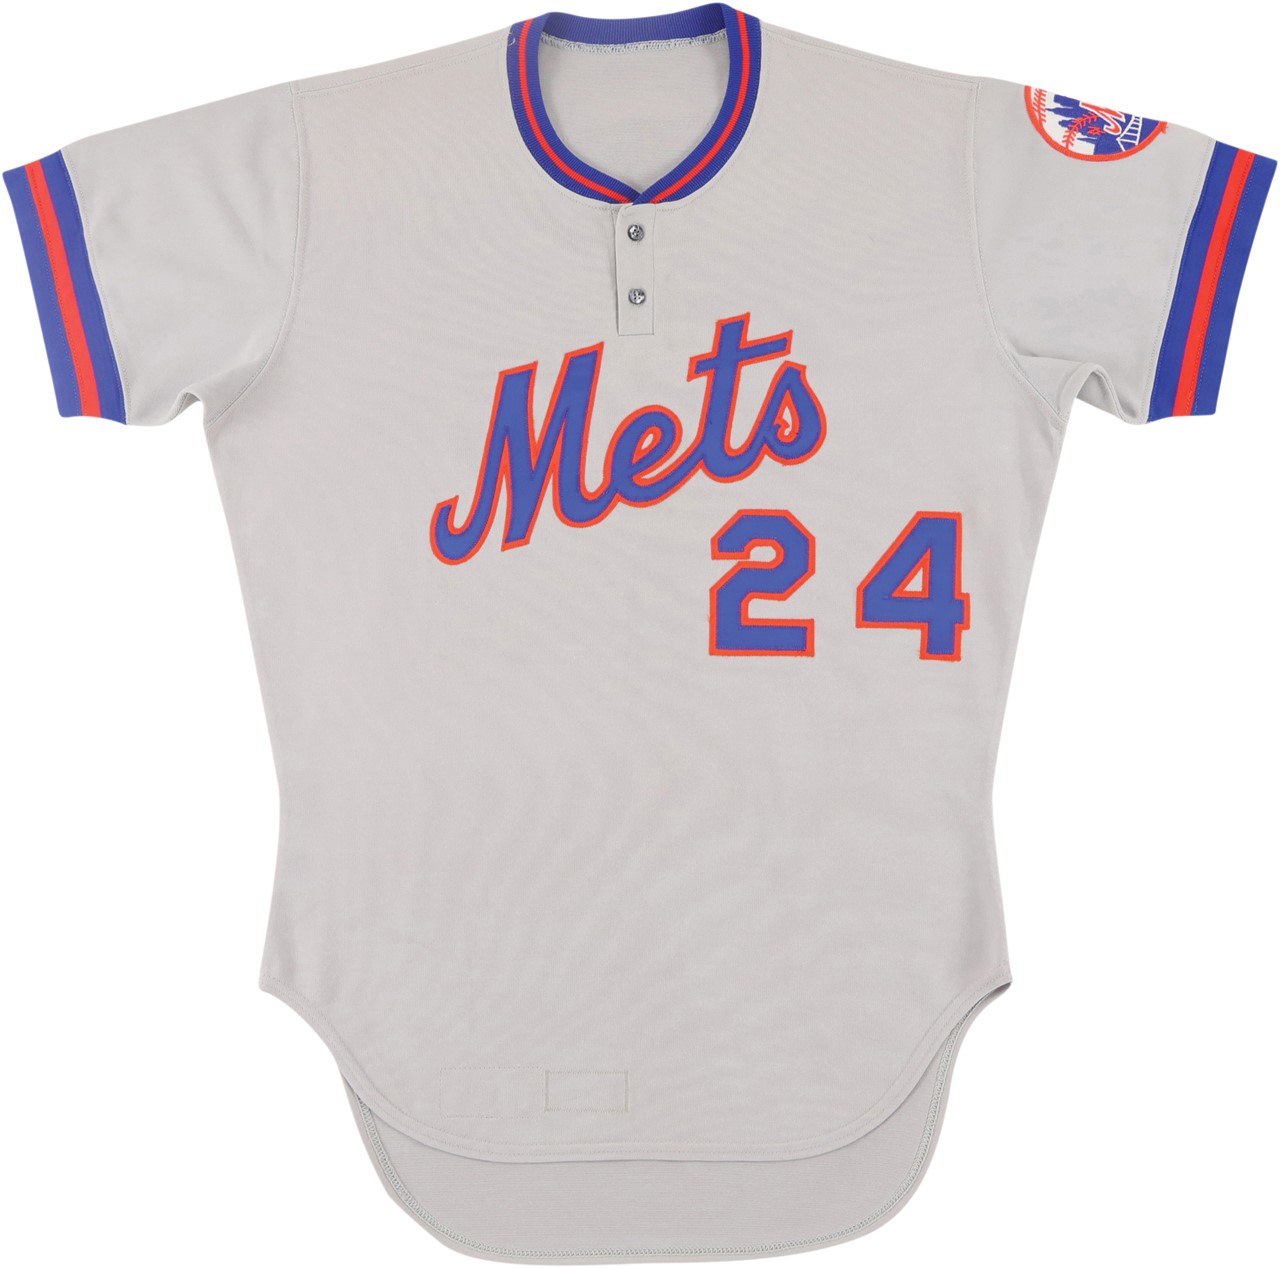 Baseball Equipment - 1979 Willie Mays New York Mets Game Worn Jersey